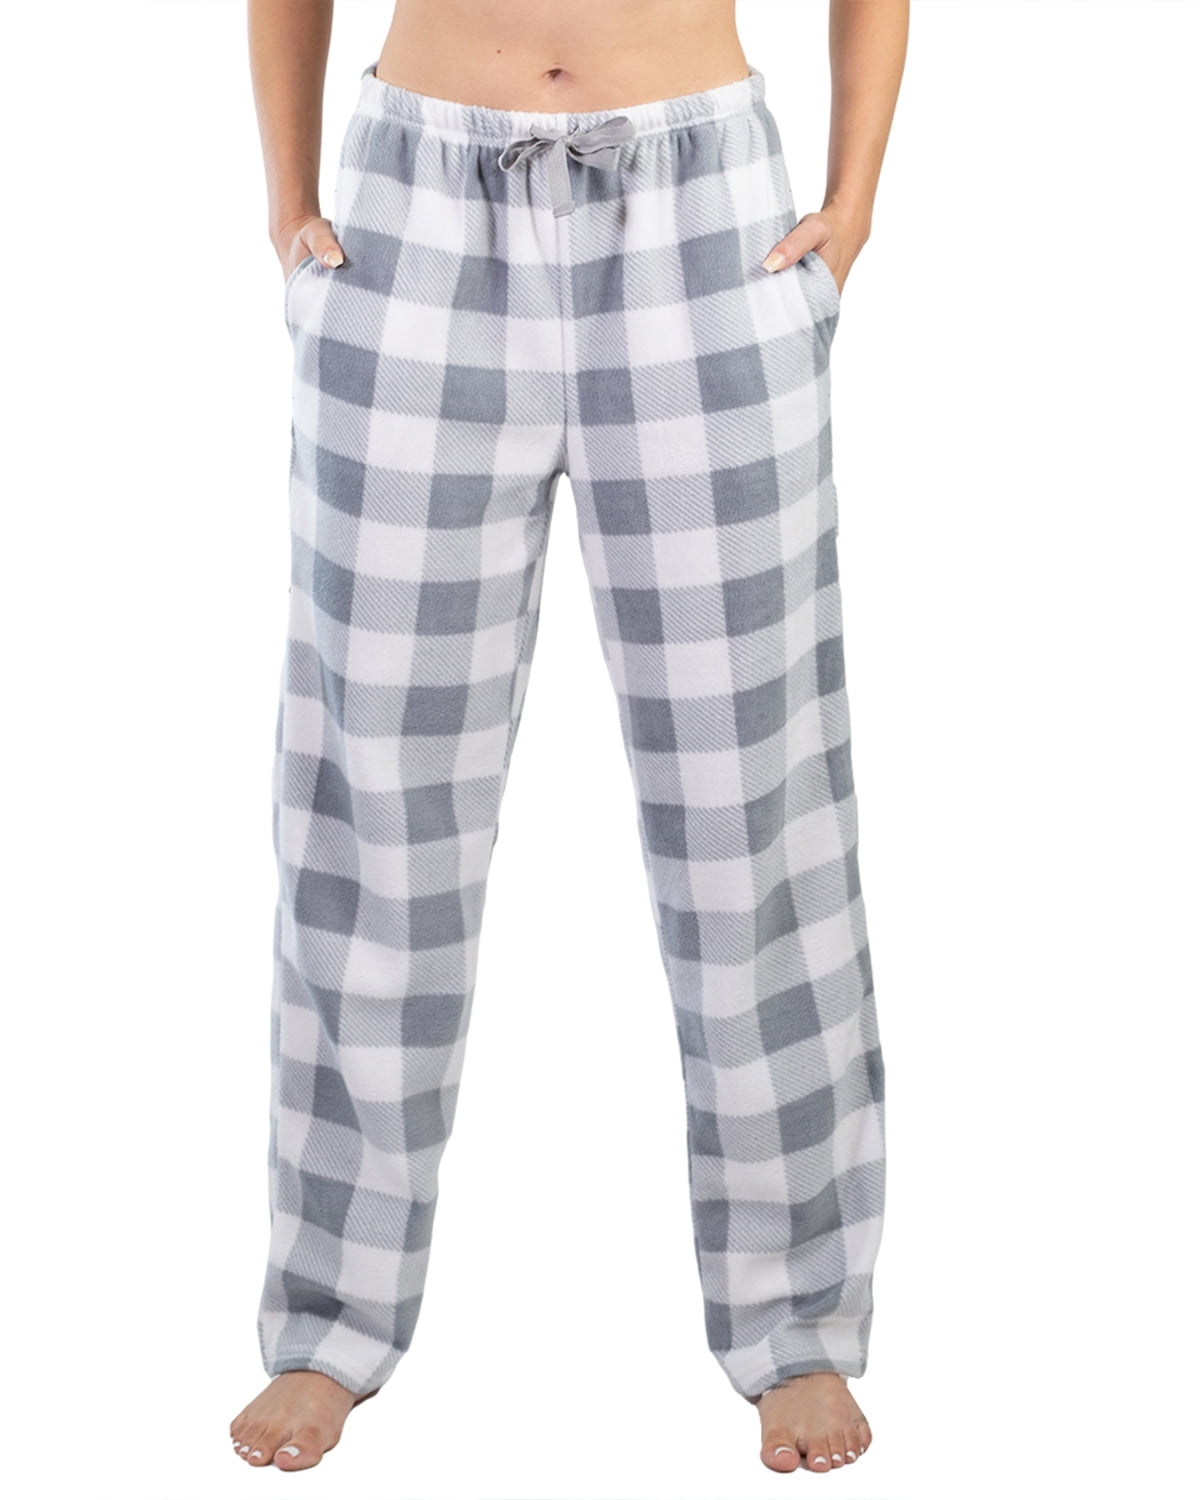 Jo & Bette Women’s Fleece Pajama Pants with Pockets, Plaid Sleep Pants ...